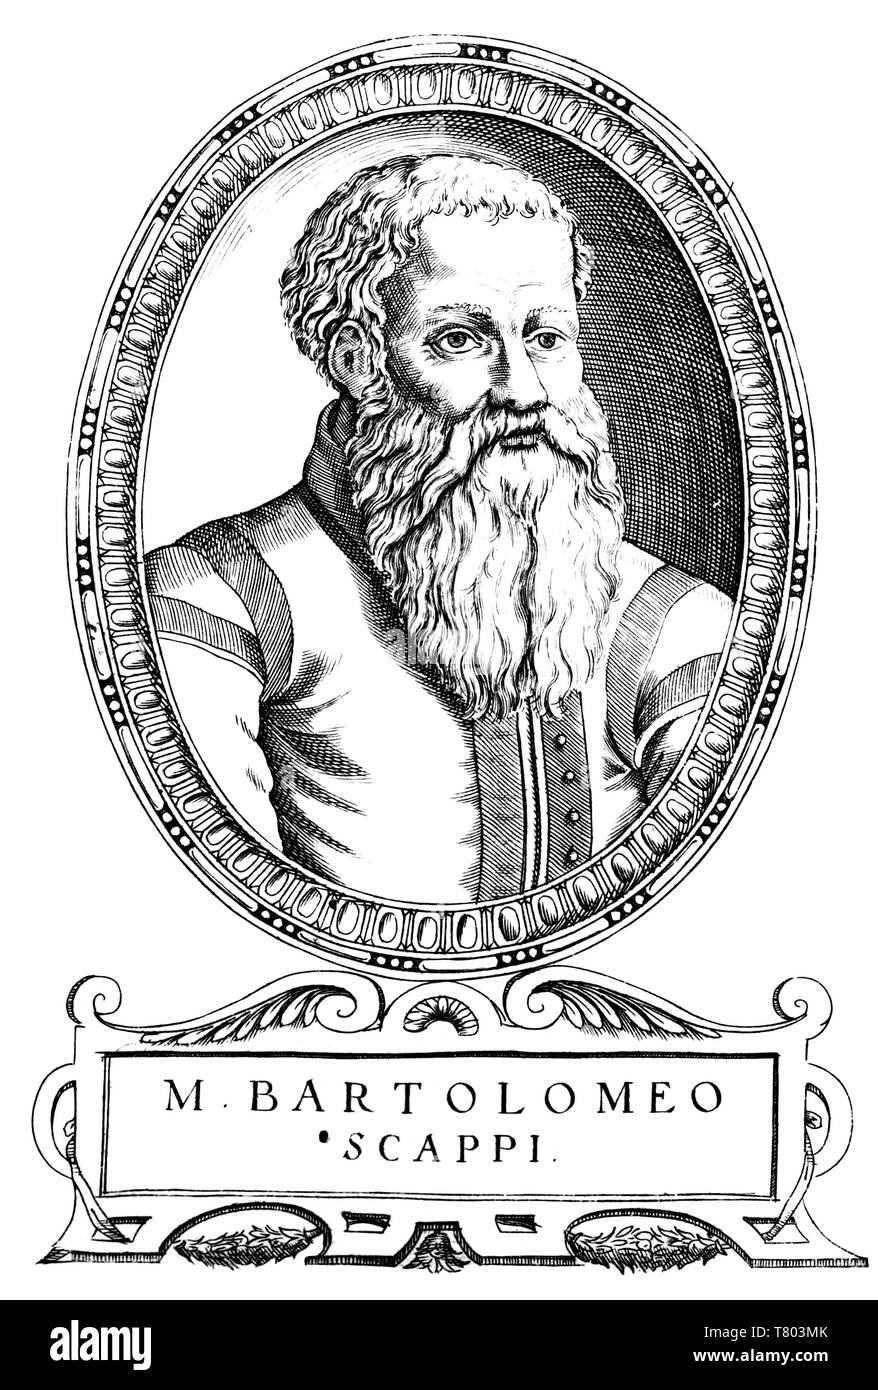 Bartolomeo Scappi, Italian Renaissance Chef Stock Photo